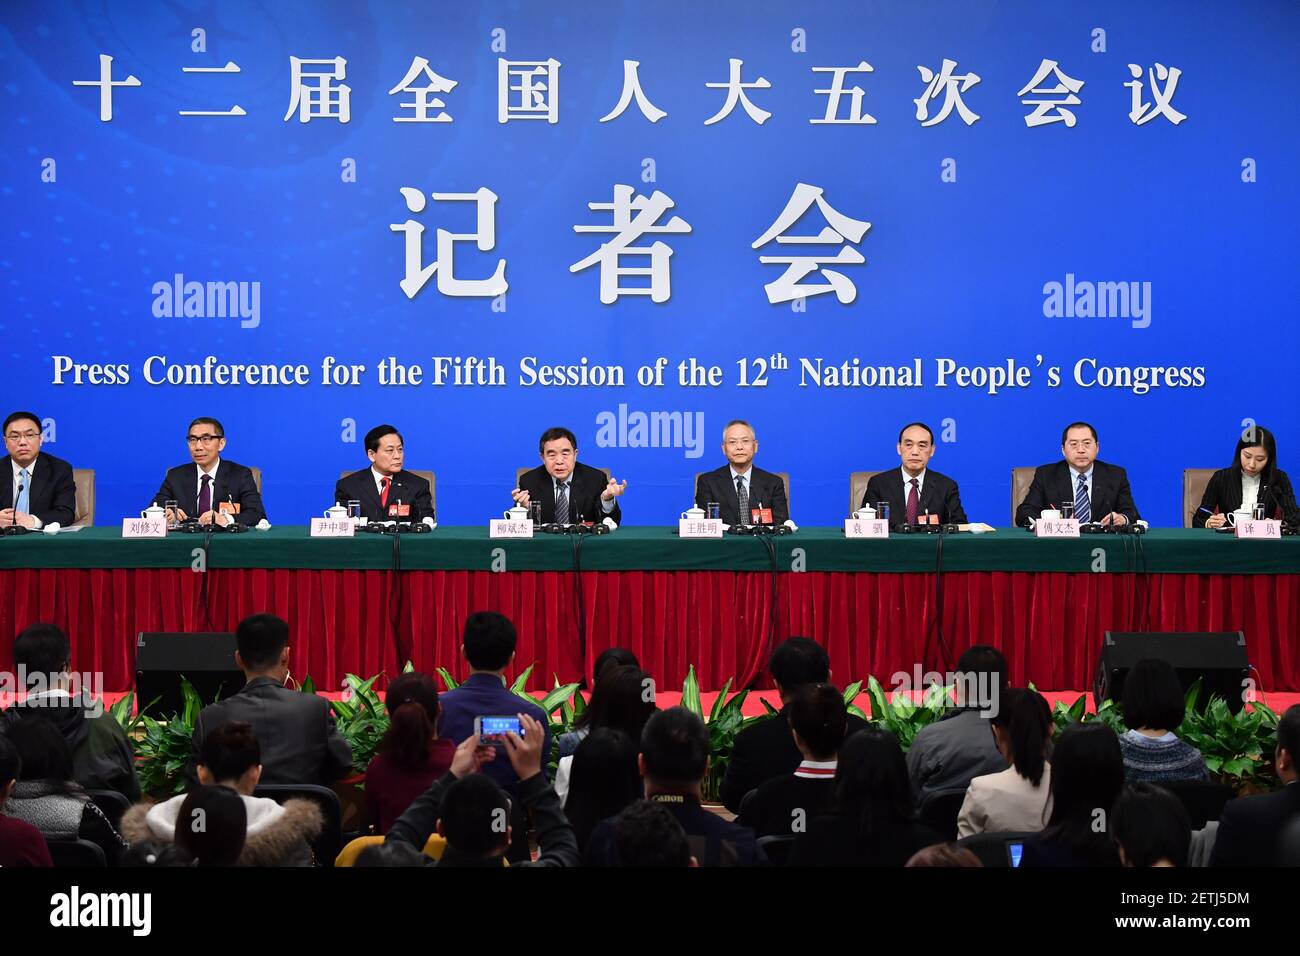 (170310) -- BEIJING, 10 de marzo de 2017 (Xinhua) -- Liu Binjie, presidente del Comité de Educación, Ciencia, Cultura y Salud Pública del Congreso Nacional del Pueblo (NPC), Wang Shengming, vicepresidente del Comité de Asuntos internos y judiciales del NPC, Yin Zhongqing, vicepresidente del Comité de Finanzas del NPC, Yuan Zhongqing, Si, vicepresidente del Comité de Protección del Medio Ambiente y Conservación de los Recursos del NPC, Liu Xiuwen, subdirector de la Comisión de Asuntos presupuestarios del Comité Permanente del NPC y Fu Wenjie, inspector de la Oficina de Secretarios del Comité Permanente del NPC Foto de stock